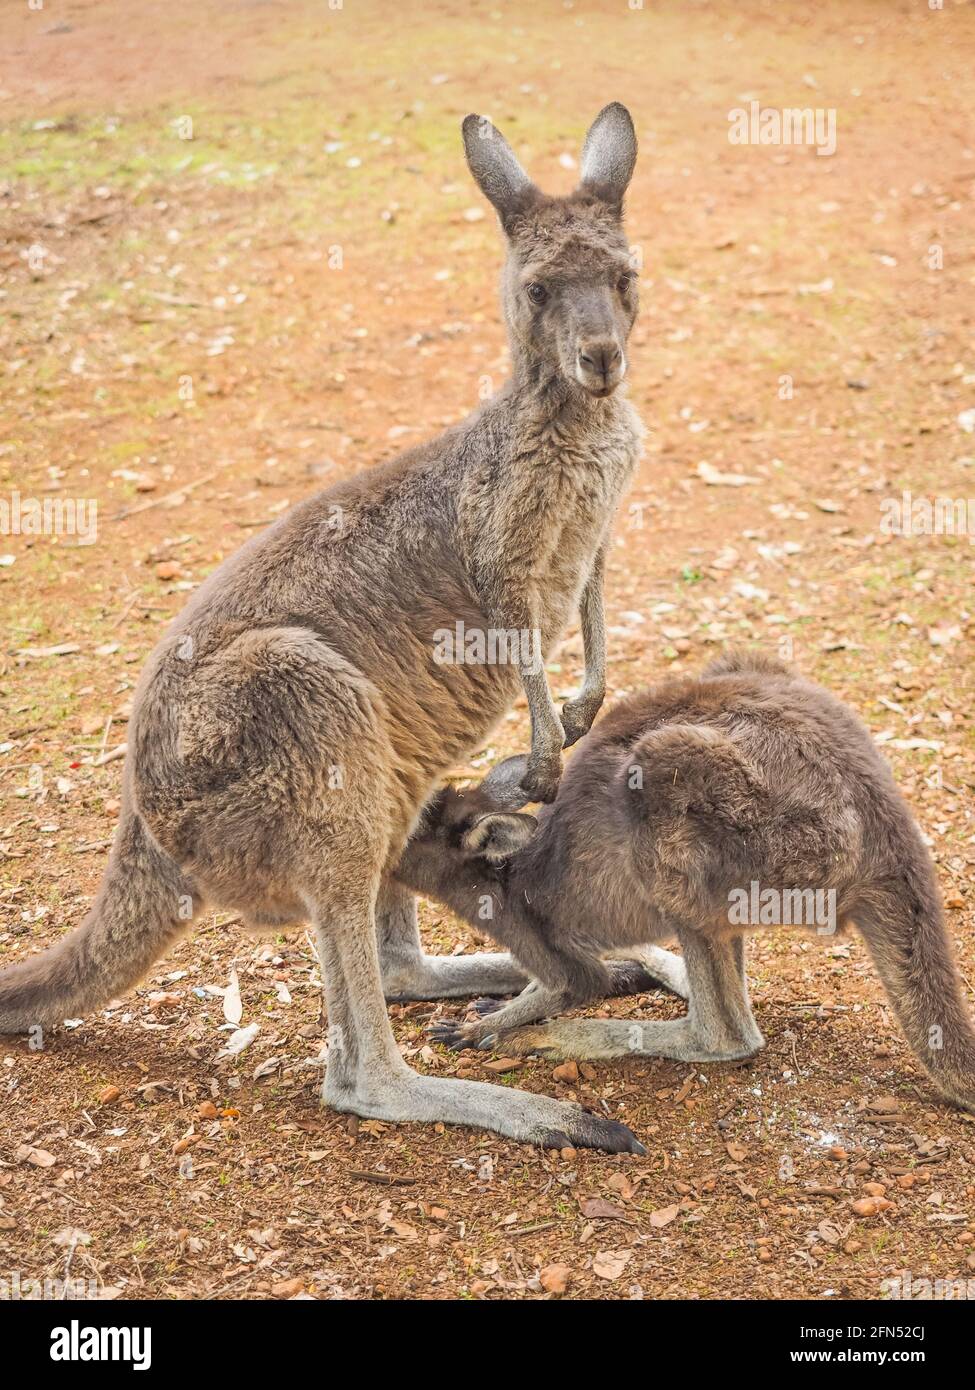 Un kangourou gris occidental (Macropus fuliginosus), nourrissant son jeune (connu sous le nom de Joey) en Australie occidentale. Banque D'Images